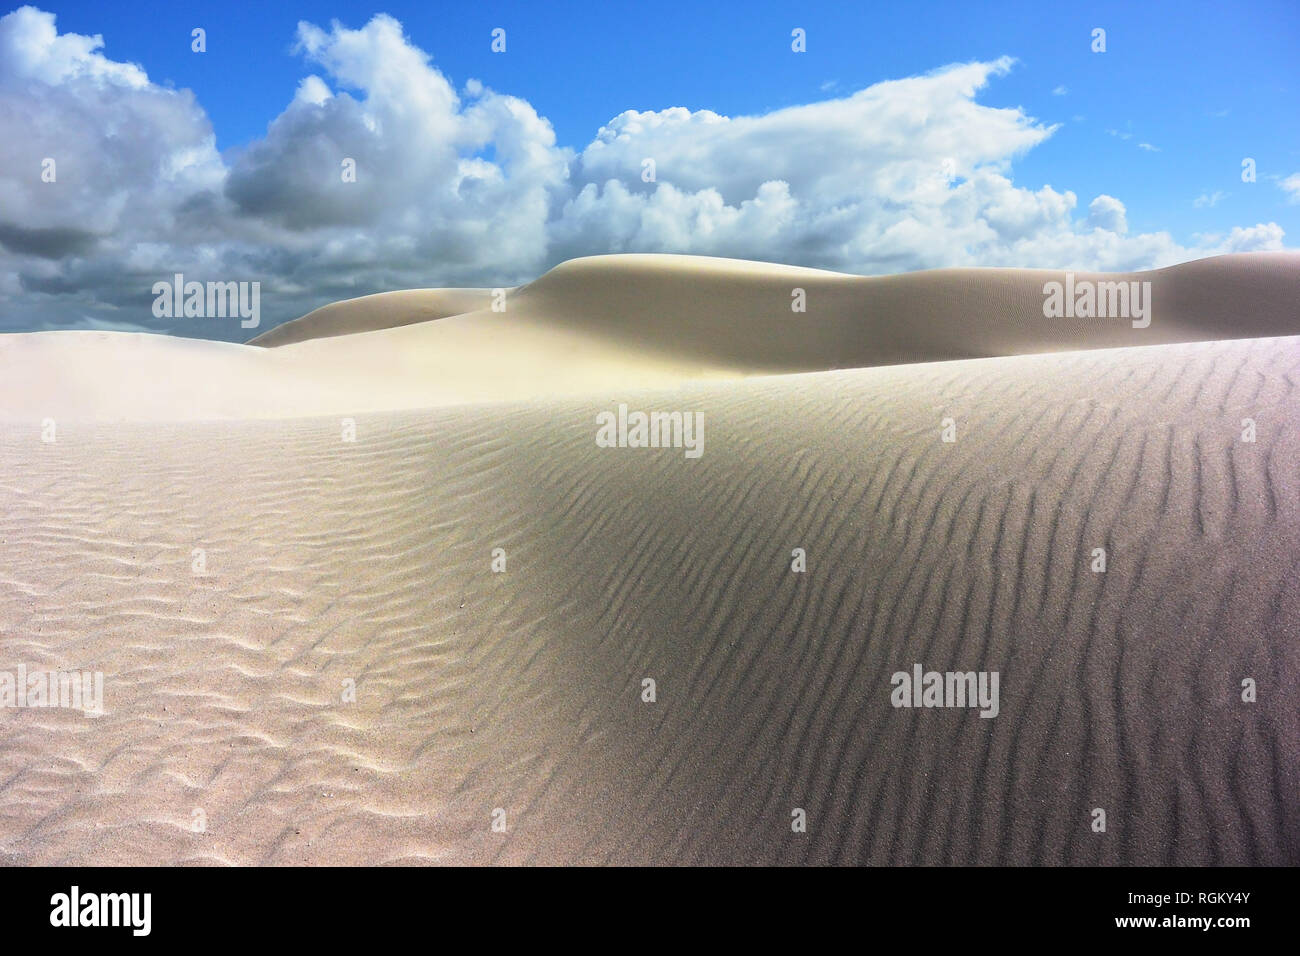 Désert Great Victoria, Nullarbor, WA : white sand dunes intactes, ciel bleu et nuages/threatenig storm coming. Lieu vide, paysage magnifique. Banque D'Images